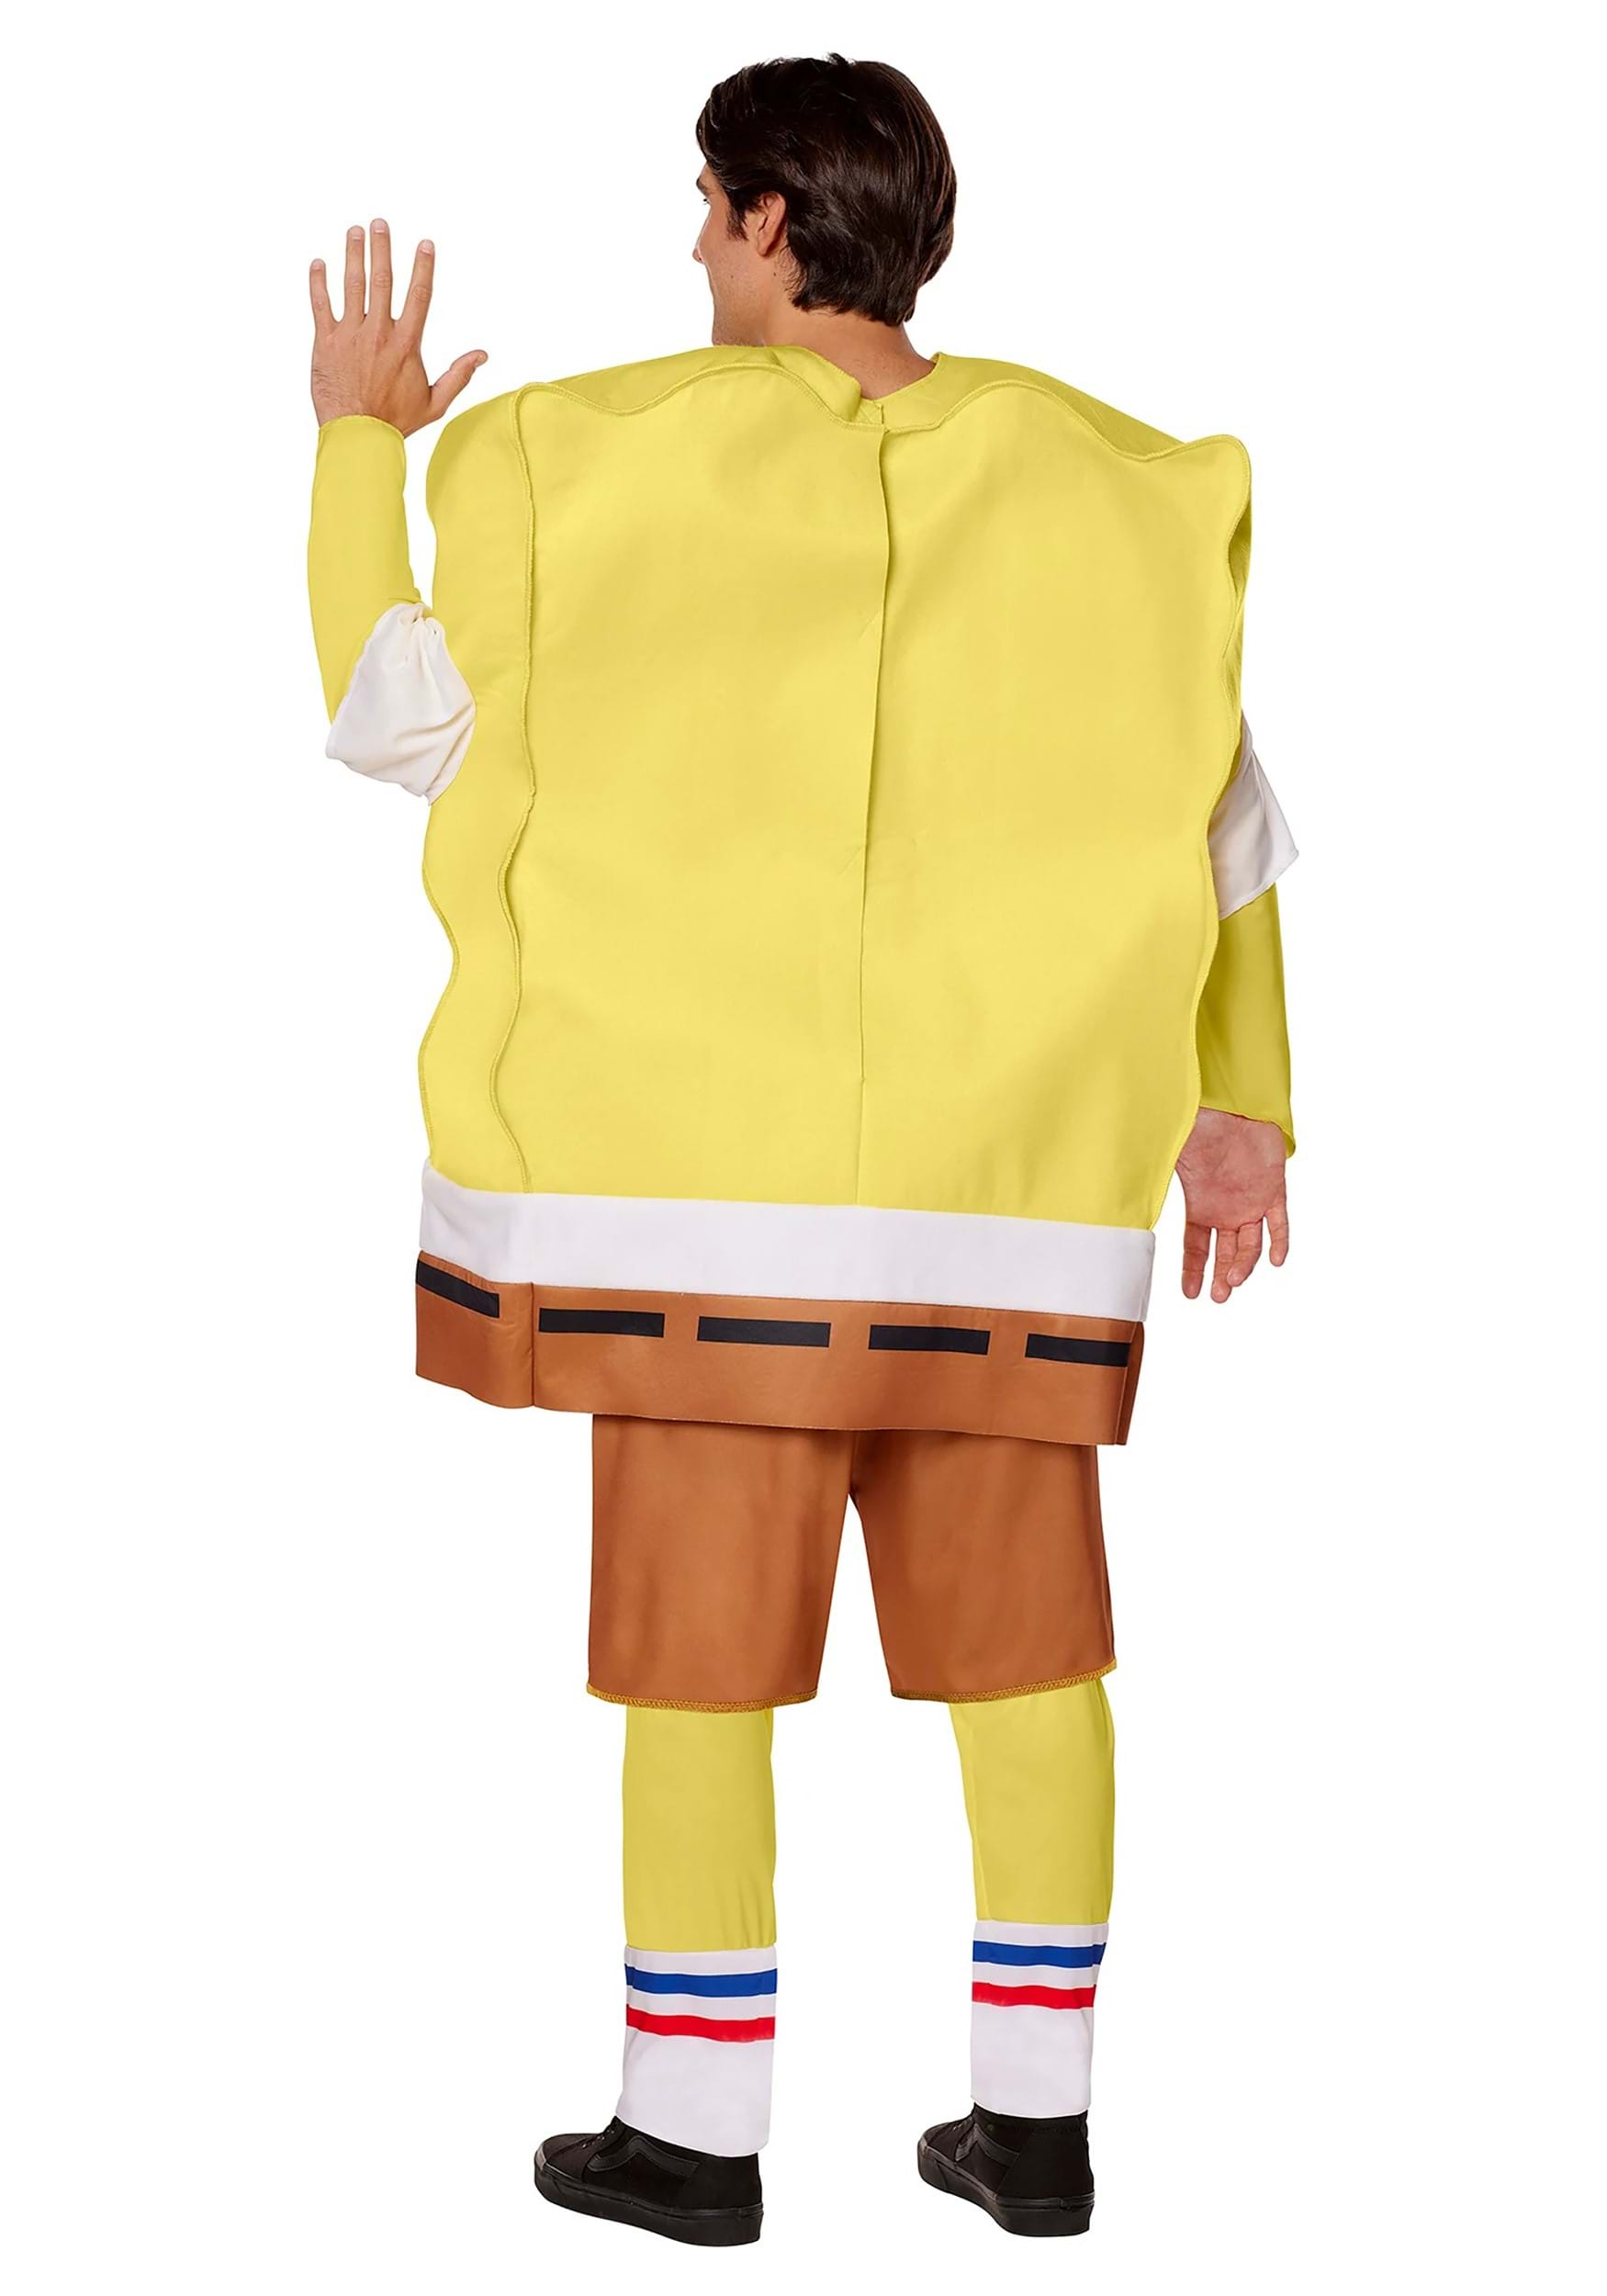 SpongeBob SquarePants Adult Fancy Dress Costume